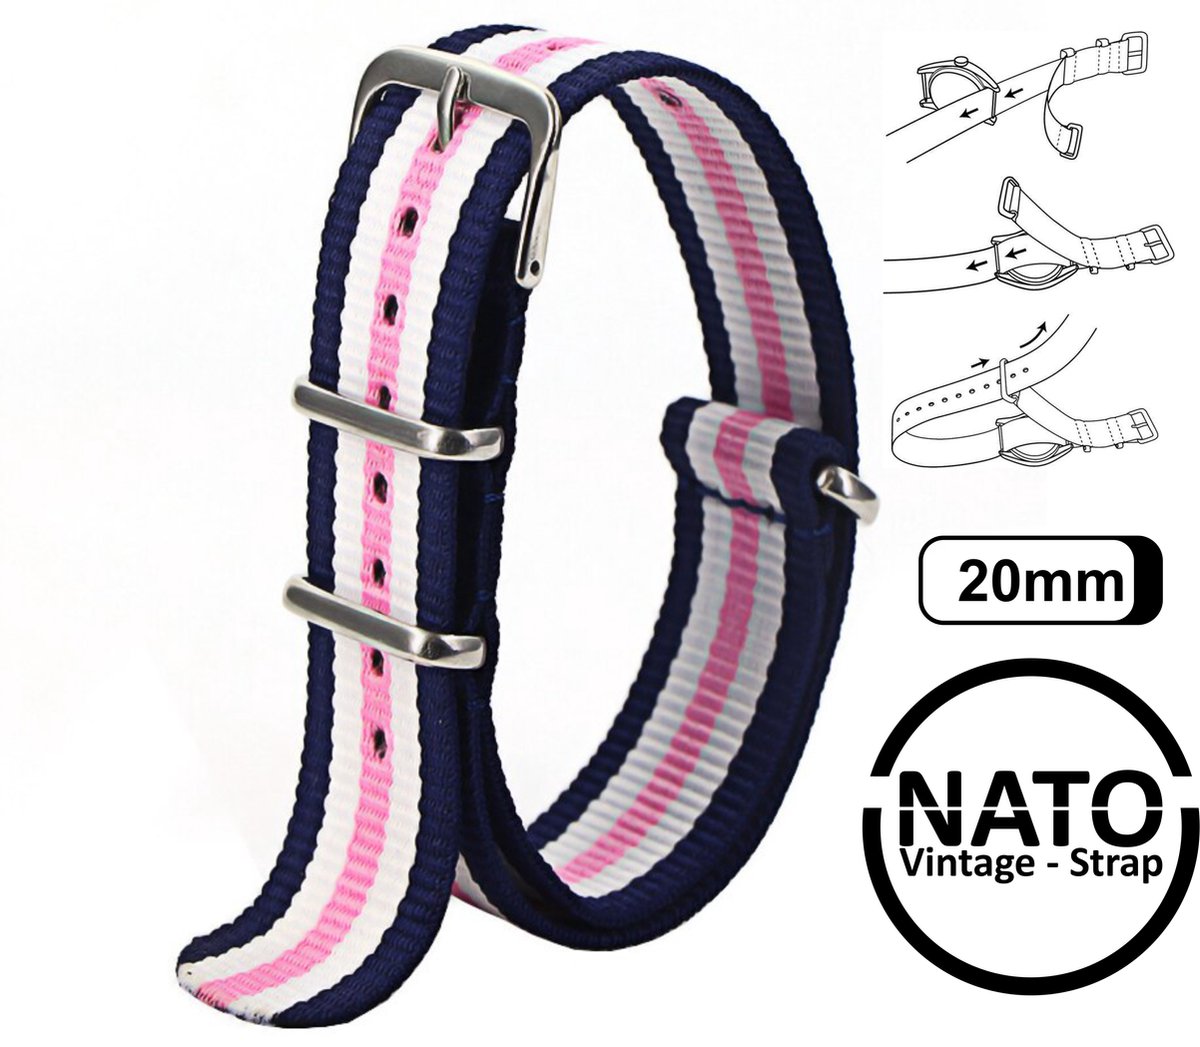 20mm Premium Nato Strap Blauw Roze Wit - Vintage James Bond - Nato Strap collectie - Mannen - Horlogeband - 20 mm bandbreedte voor oa. Seiko Rolex Omega Casio en Citizen